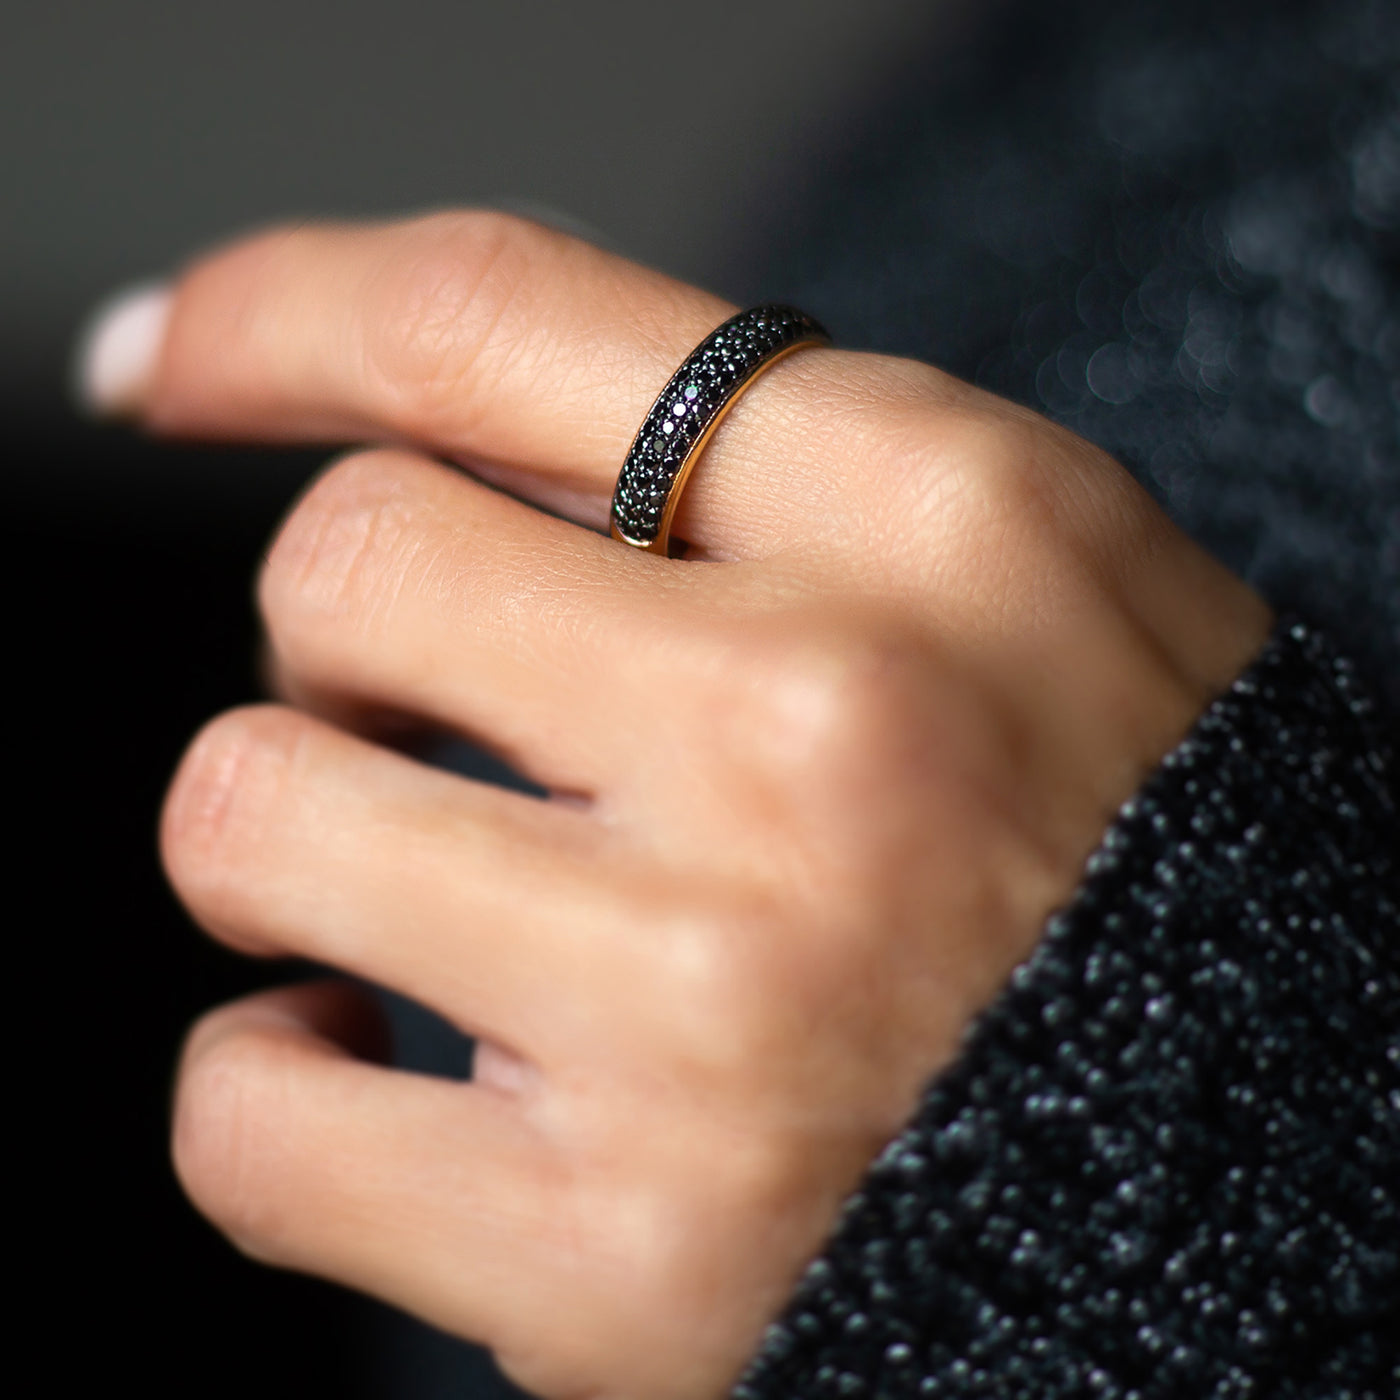 Nia | Black Diamond Pave Ring